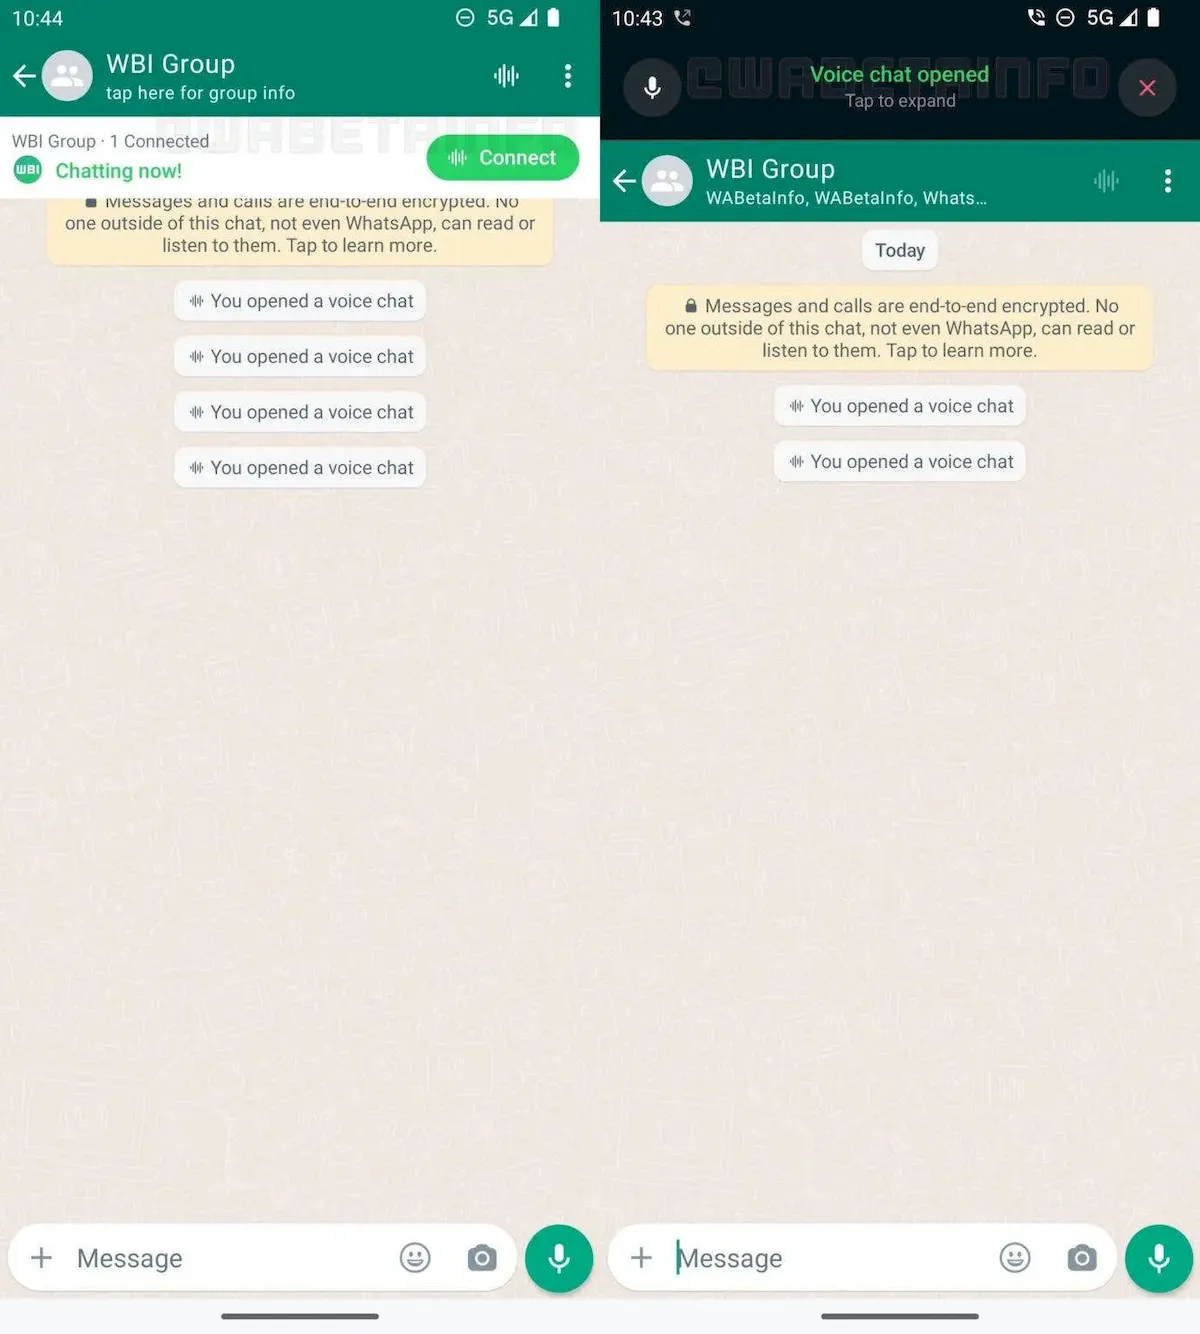 Atualização do WhatsApp detalha melhor o chat de voz em grupos